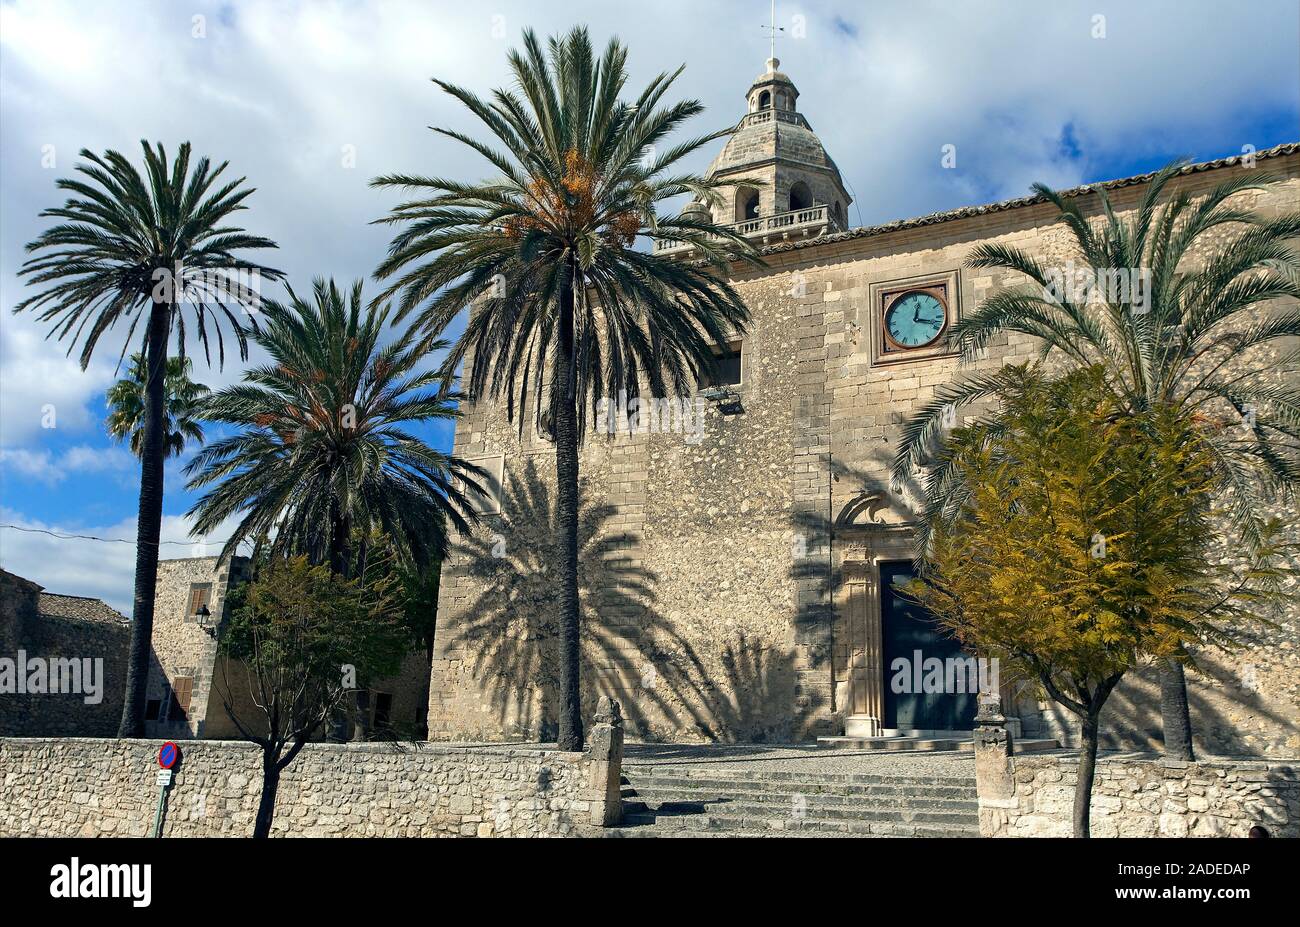 L'église gothique de Sant Pere i Sant Pau en Algaida, Mallorca, Iles Baléares, Espagne Banque D'Images